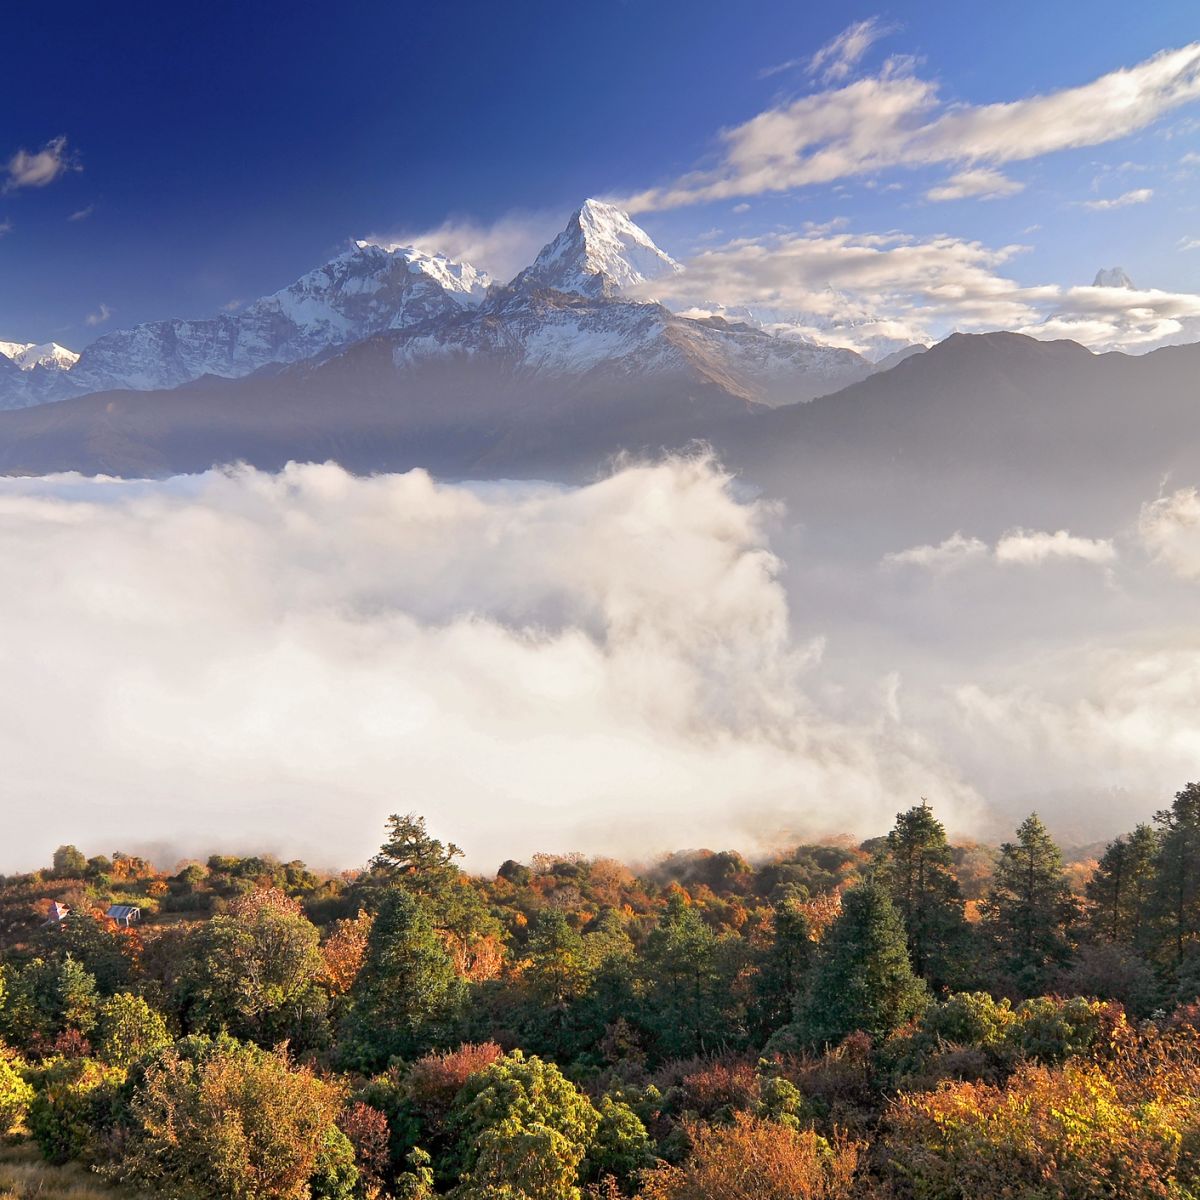 View of Annapurna mountain range including Annapurna I